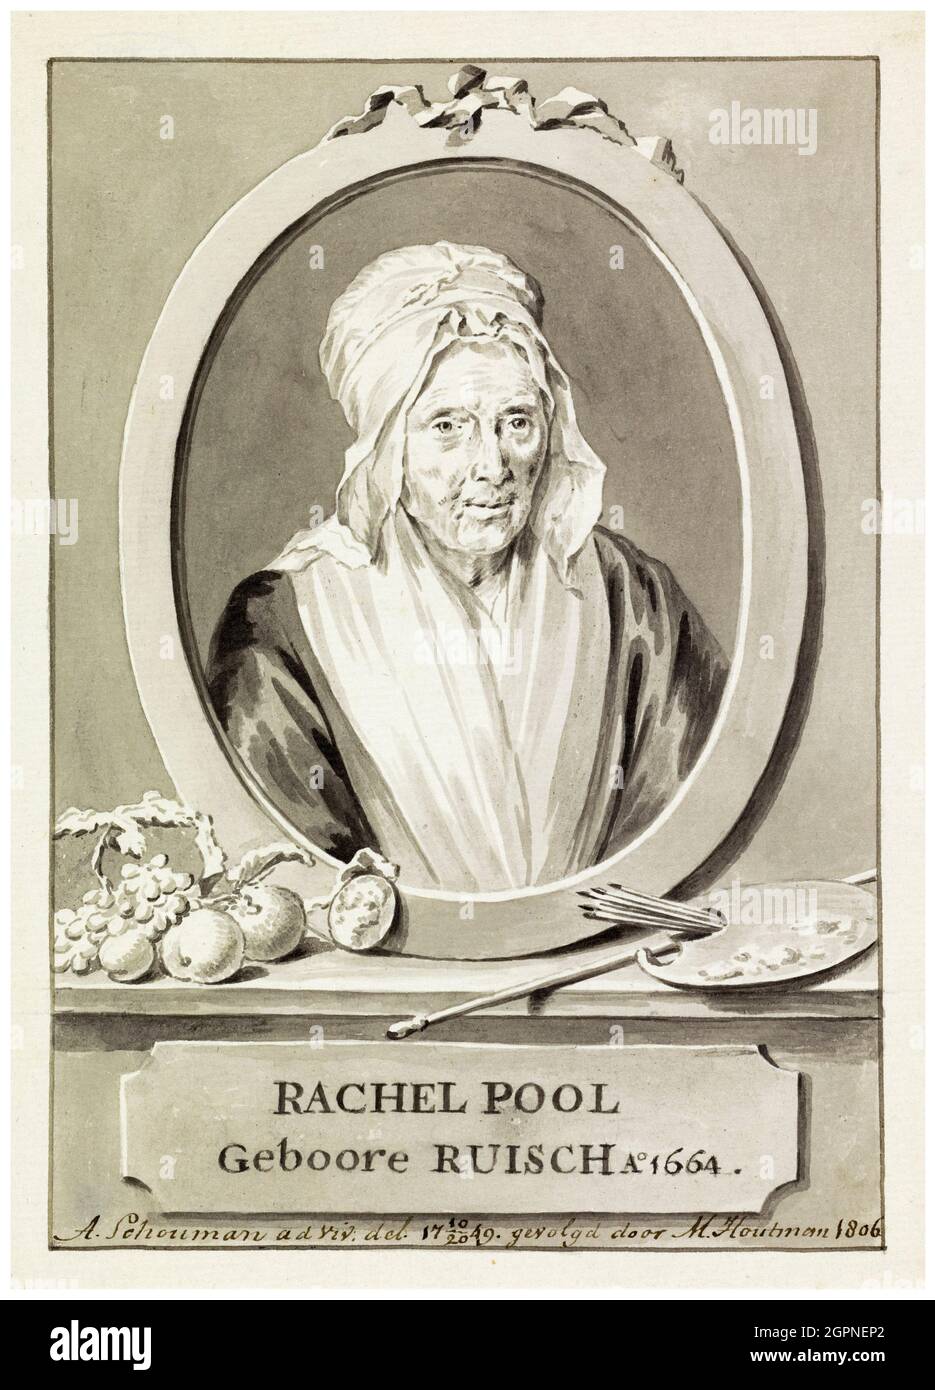 Rachel Pool-Ruysch (Rachel Ruysch) (1664-1750), Dutch Still Life painter, portrait drawing by Marten Houtman, Aert Schouman, 1806 Stock Photo